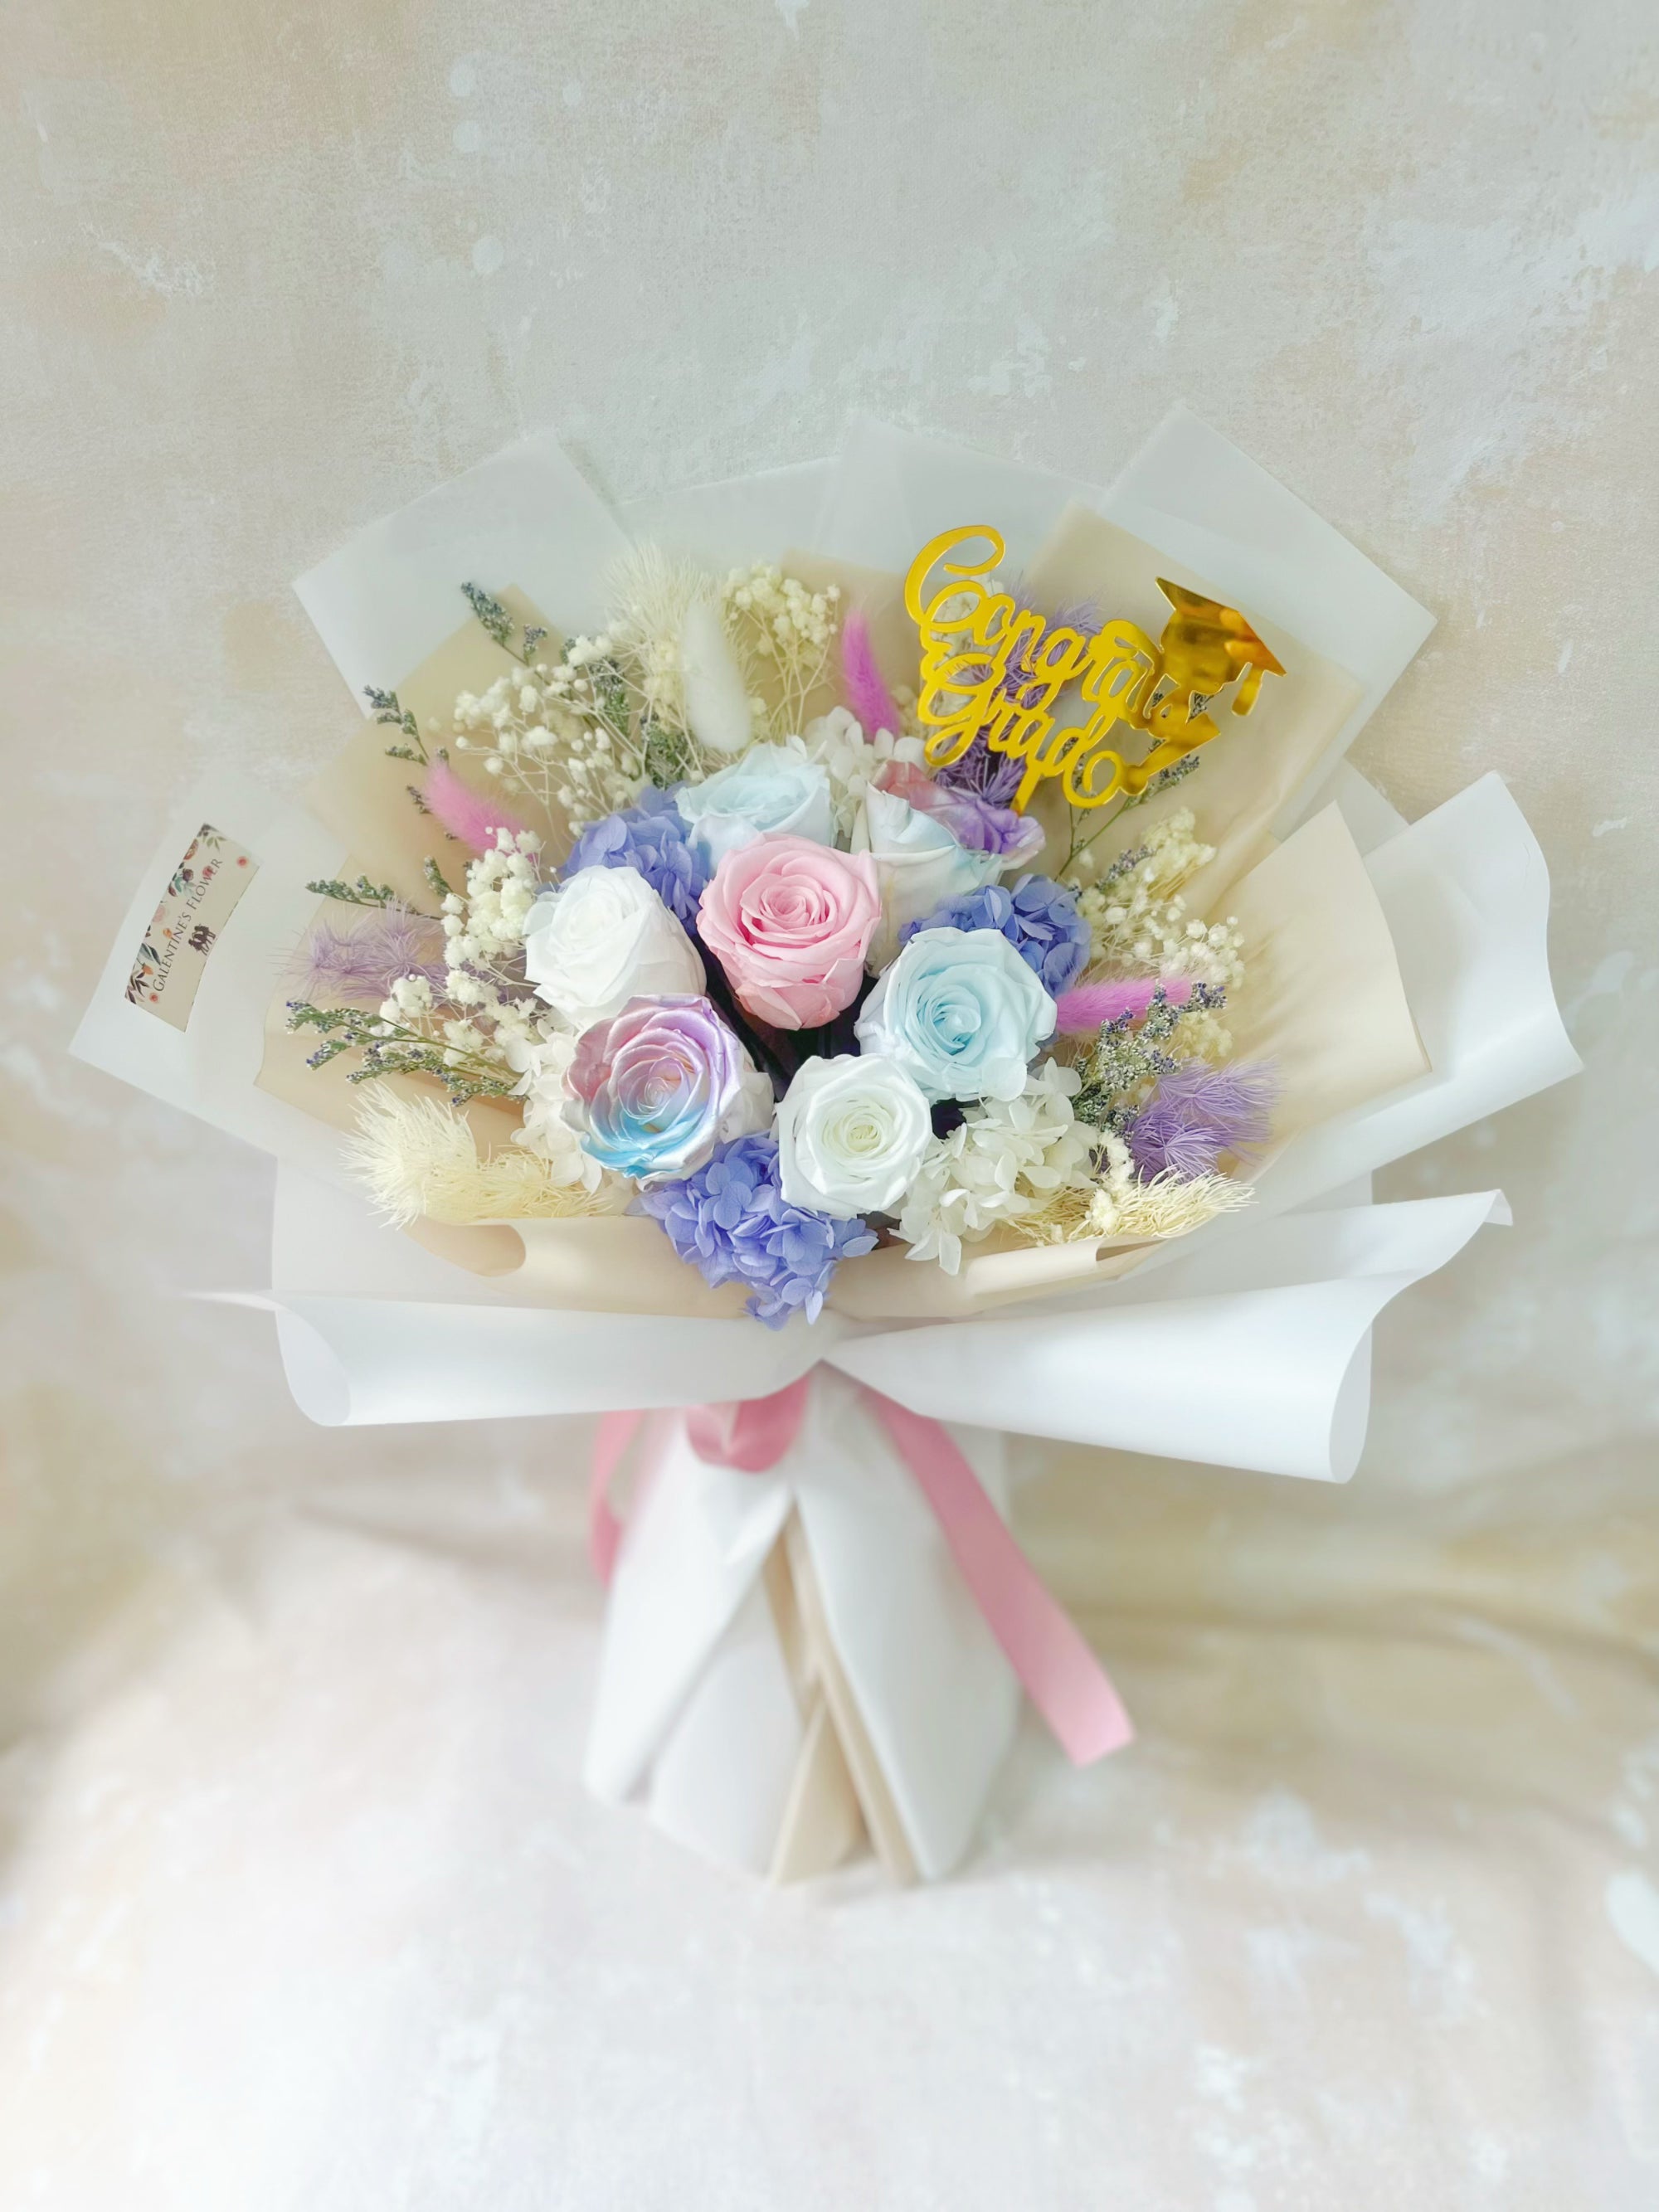 公主的假日/粉玫瑰11枝配白色洋桔梗精美花束包装/同城花店送花上门/祝福礼物